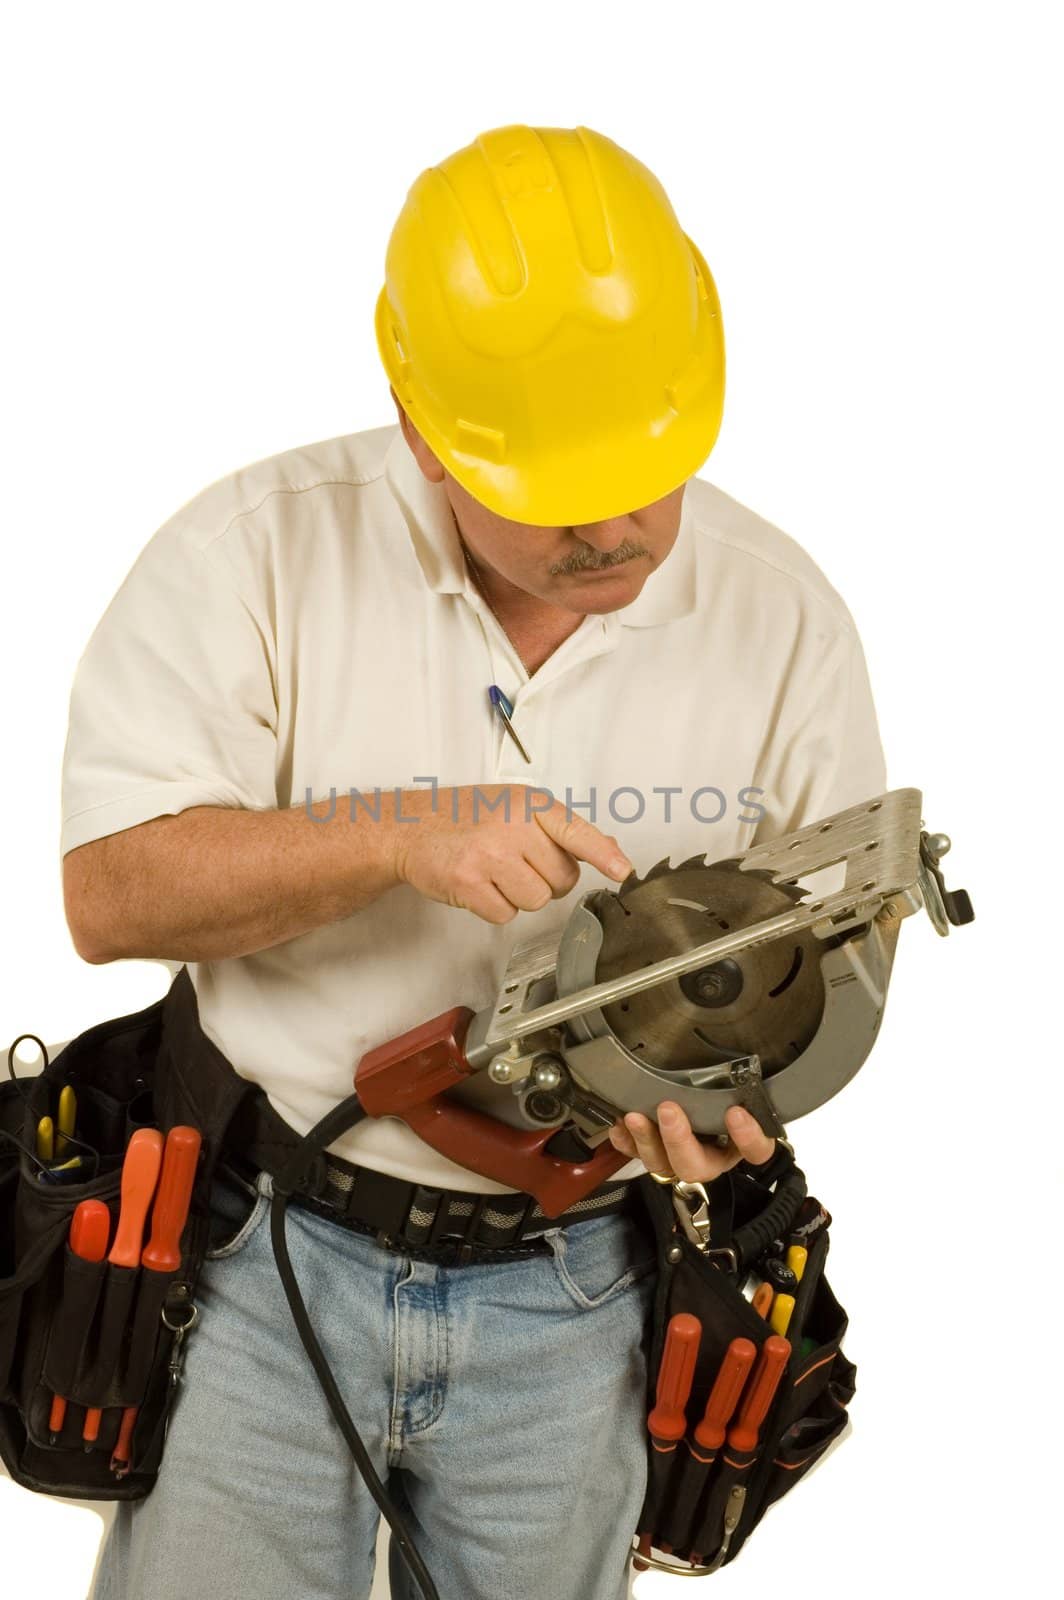 Carpenter checking teeth on circular saw